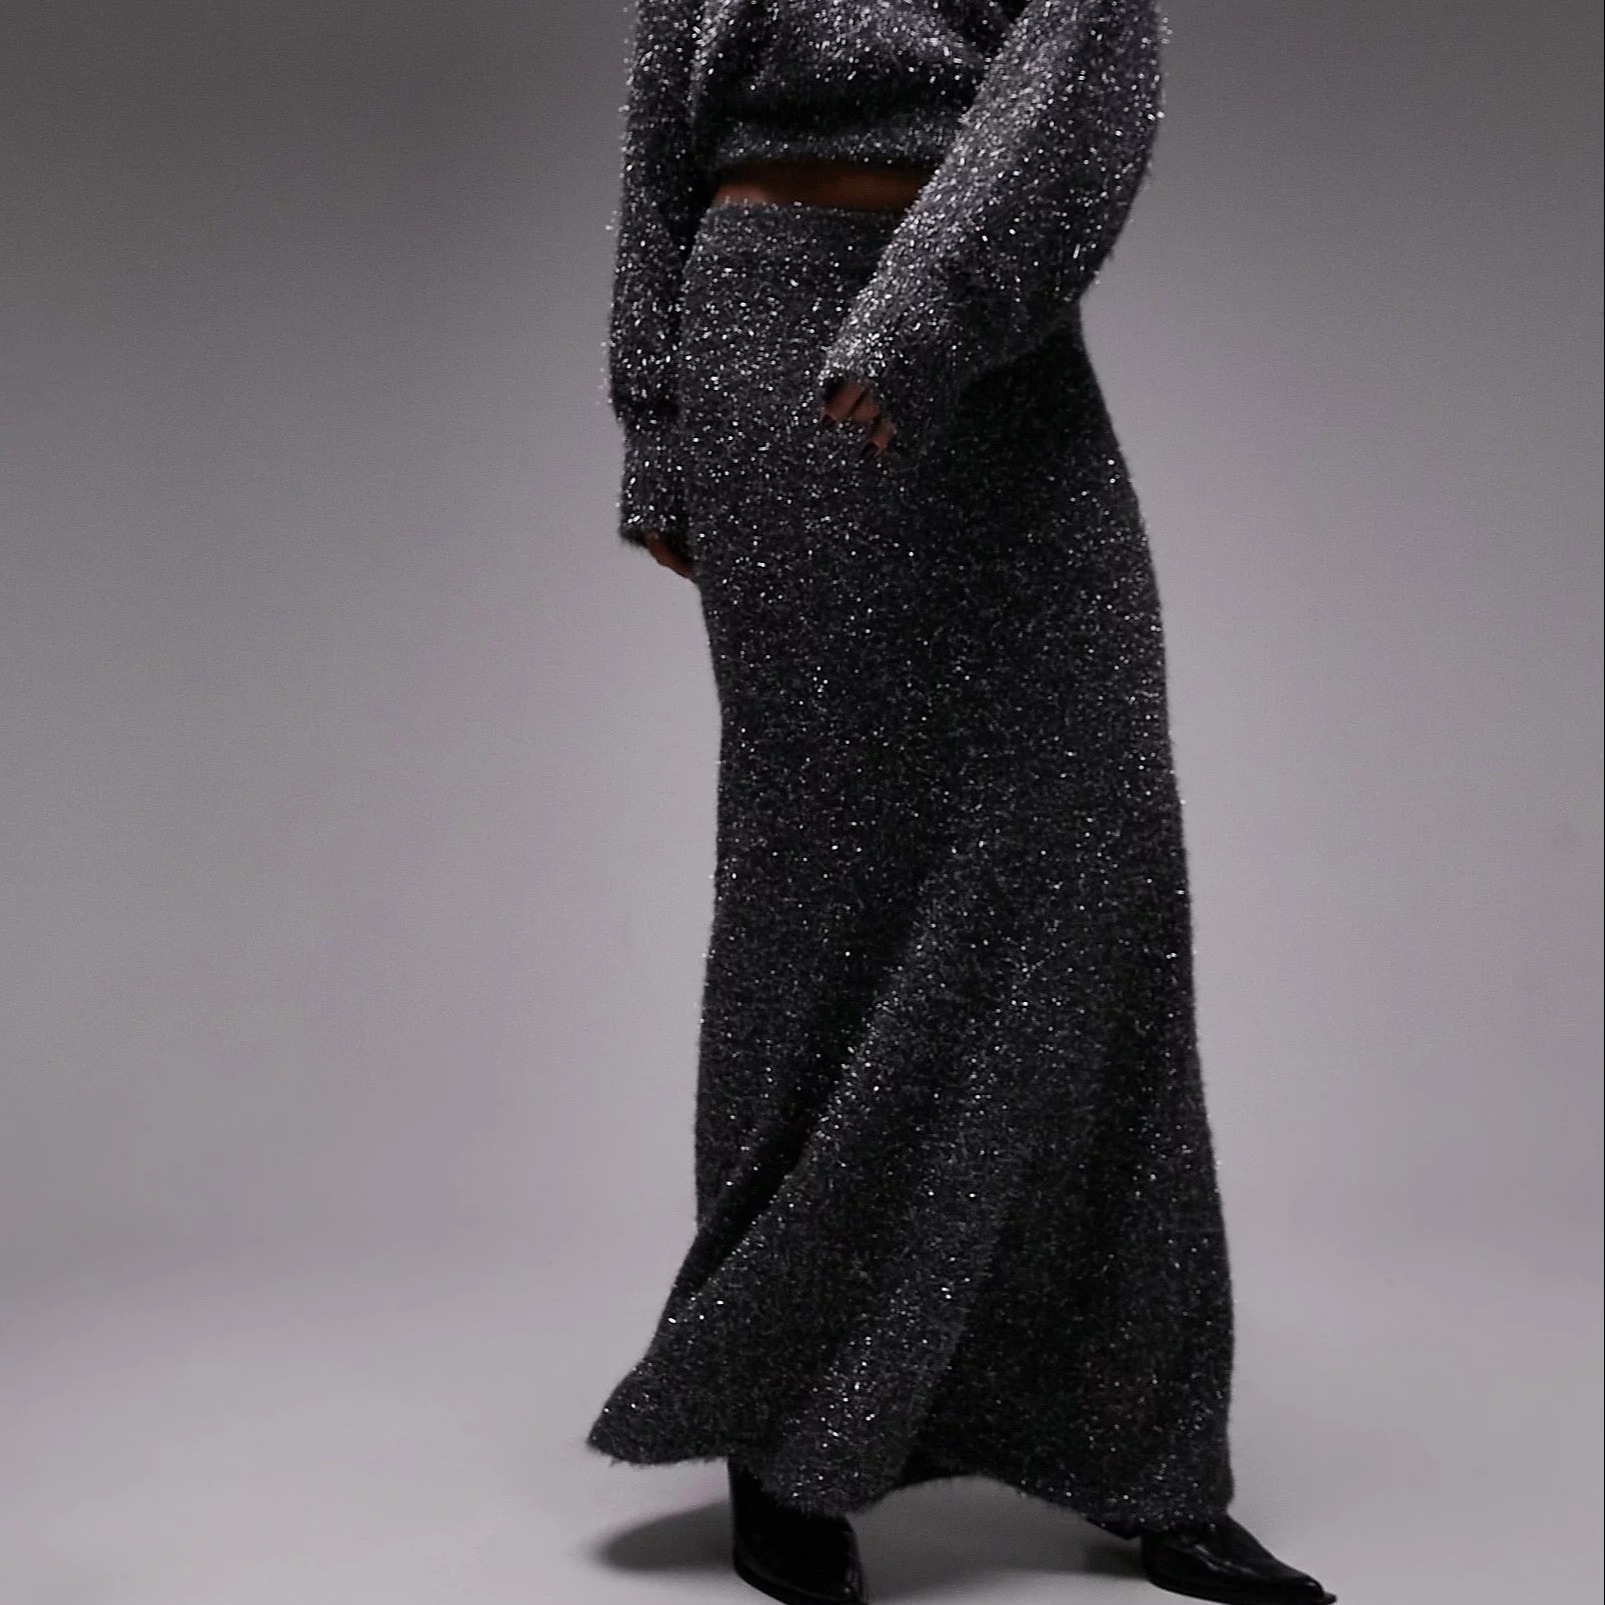 Юбка Topshop Knitted Tinsel, темно-серый юбка в горошек на эластичном поясе 3 12 лет 4 года 102 см синий